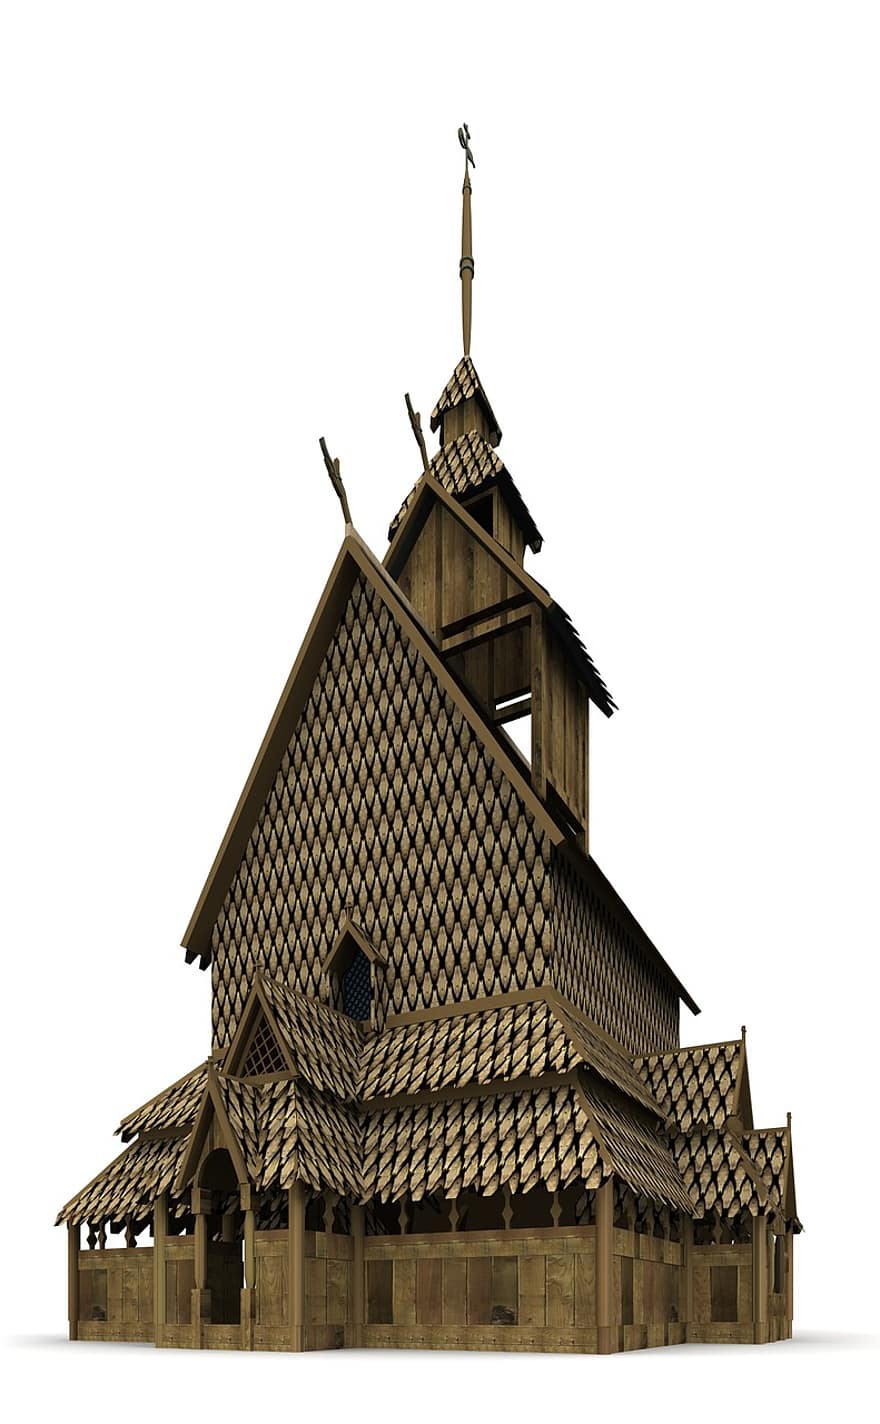 εκκλησία, Νορβηγία, αρχιτεκτονική, Κτίριο, Εκκλησία, σημεία ενδιαφέροντος, ιστορικά, τουρίστες, αξιοθεατο, ορόσημο, πρόσοψη